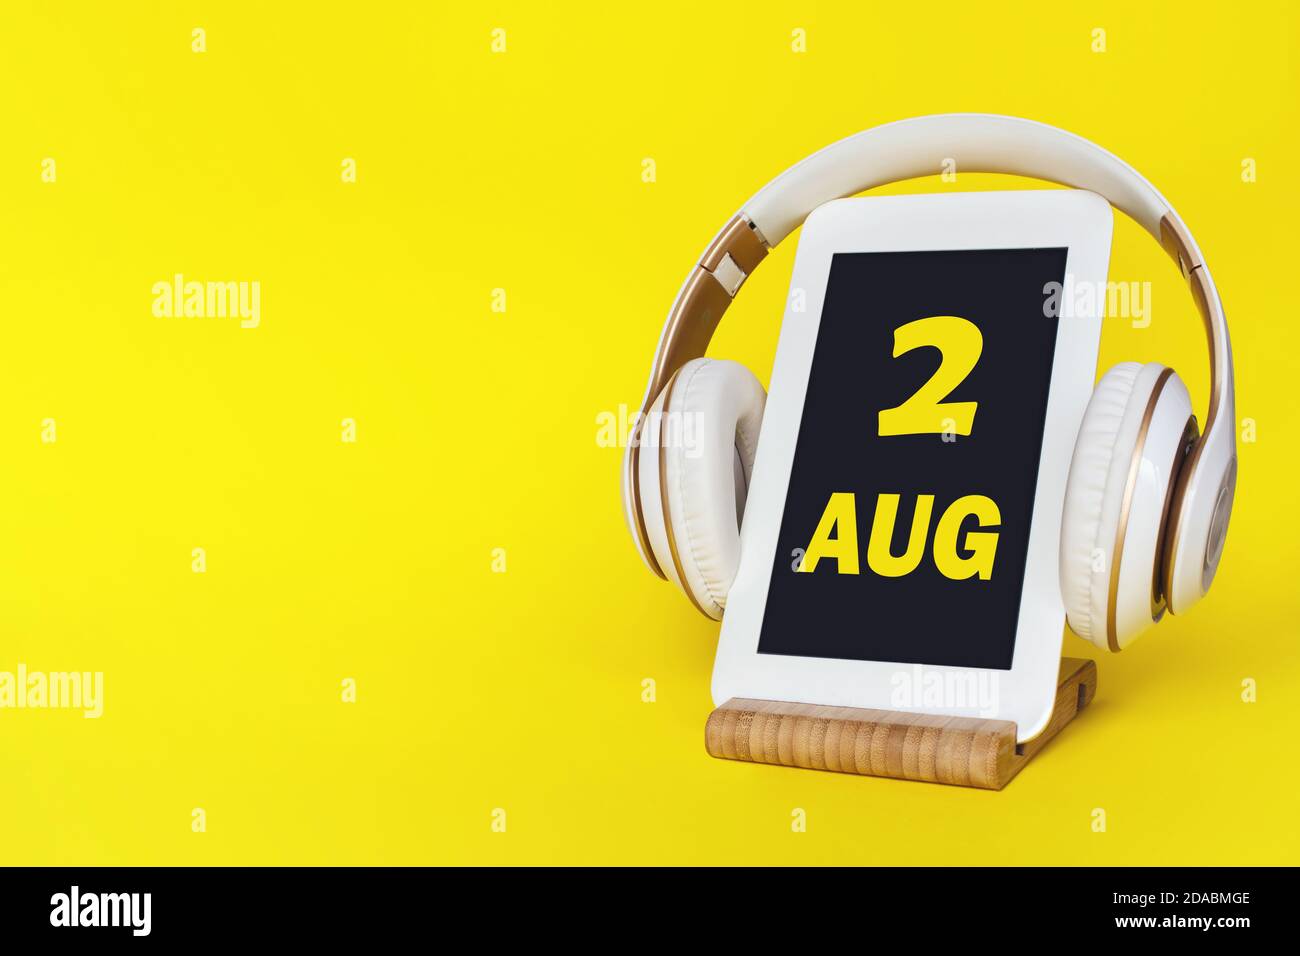 2 août. Jour 2 du mois, date du calendrier. Casque élégant et tablette moderne sur fond jaune. Espace pour le texte. Éducation, technologie, style de vie Banque D'Images